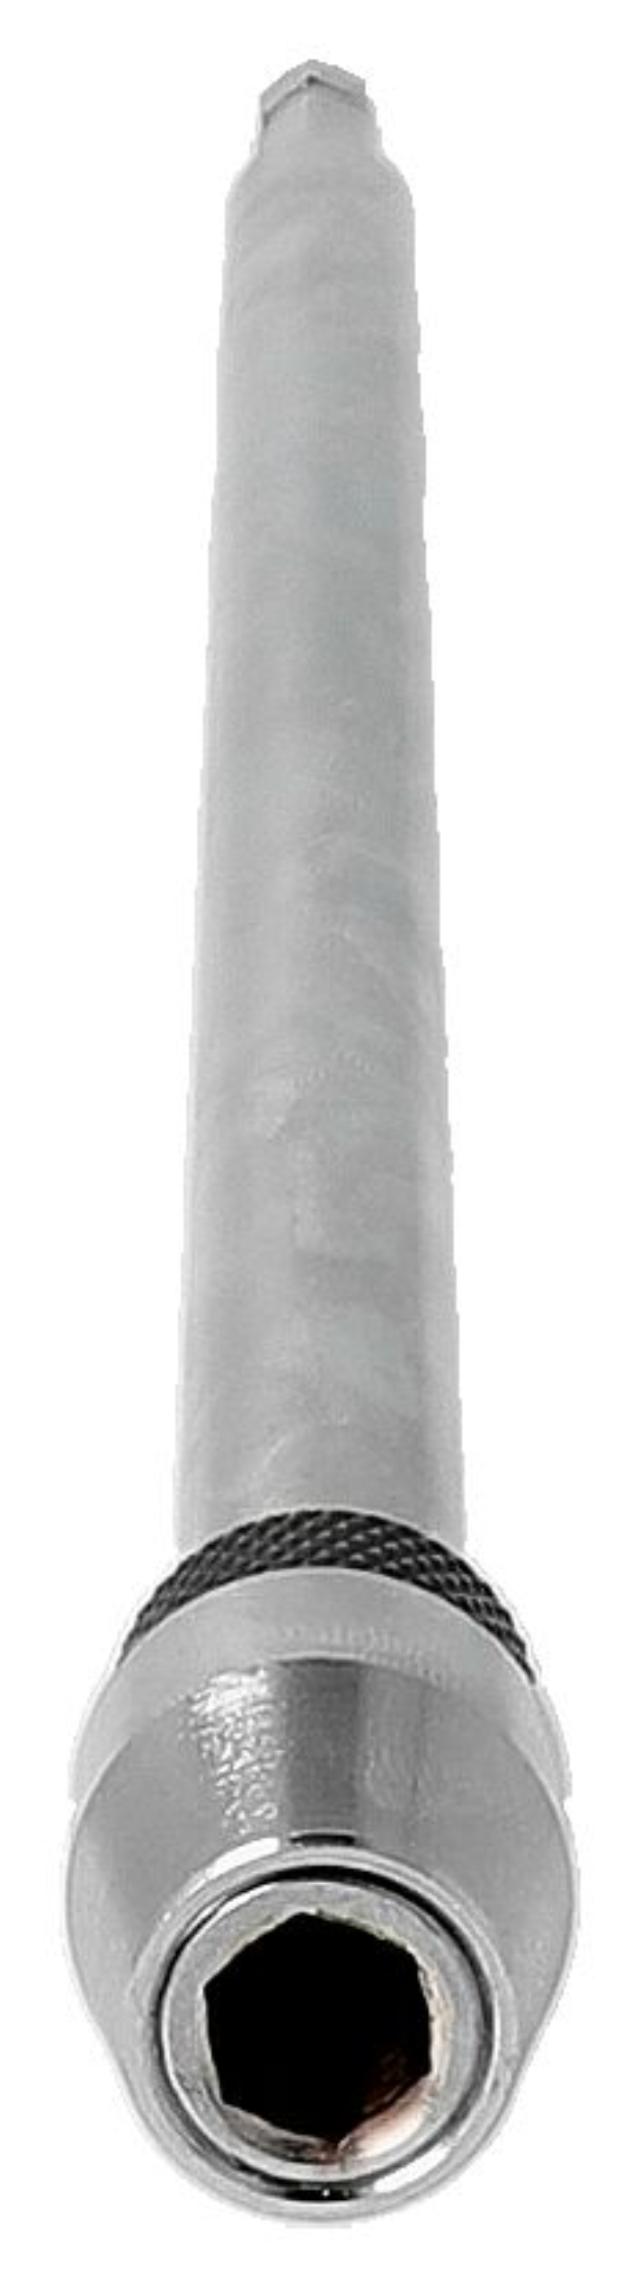 Flachbohrer von Heller ist 300 mm lang ausziehbar